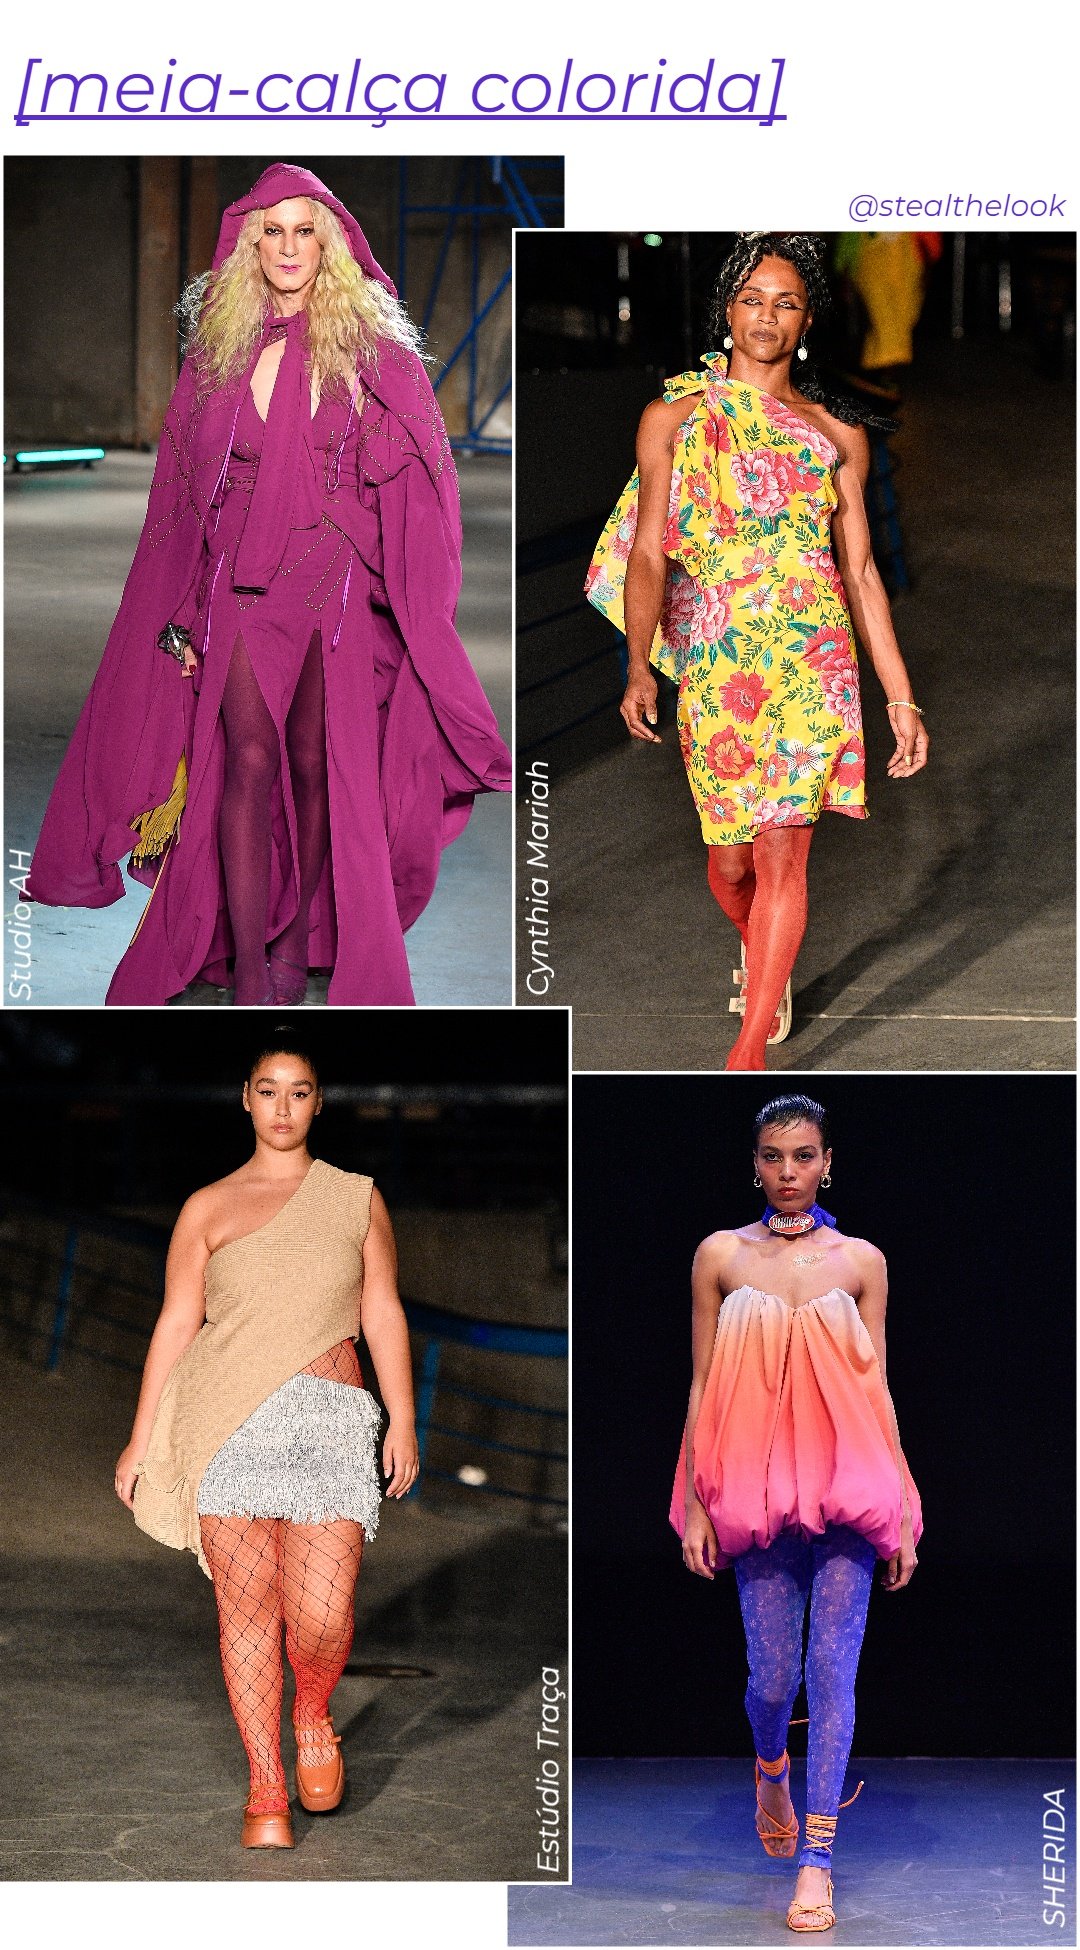 Meia-calça colorida - tendências de moda - tendências de moda - tendências de moda - tendências de moda - https://stealthelook.com.br